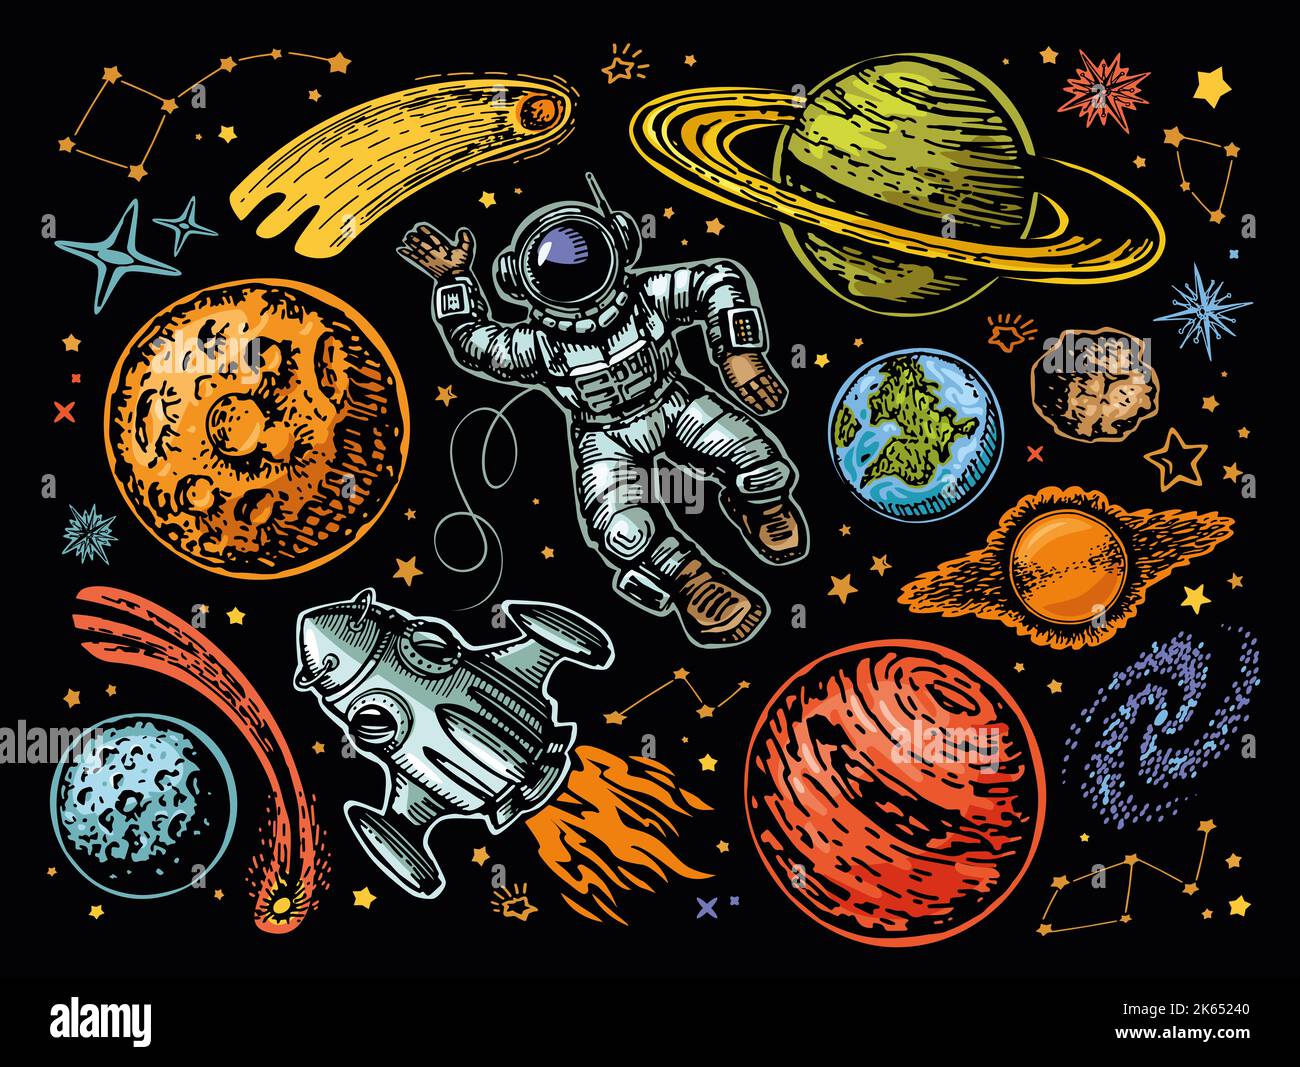 Raum futuristisches kreatives Design. Planeten und Raumschiff, Rakete, Sterne, Astronaut. Astronomie farbenfrohe Illustration Stockfoto